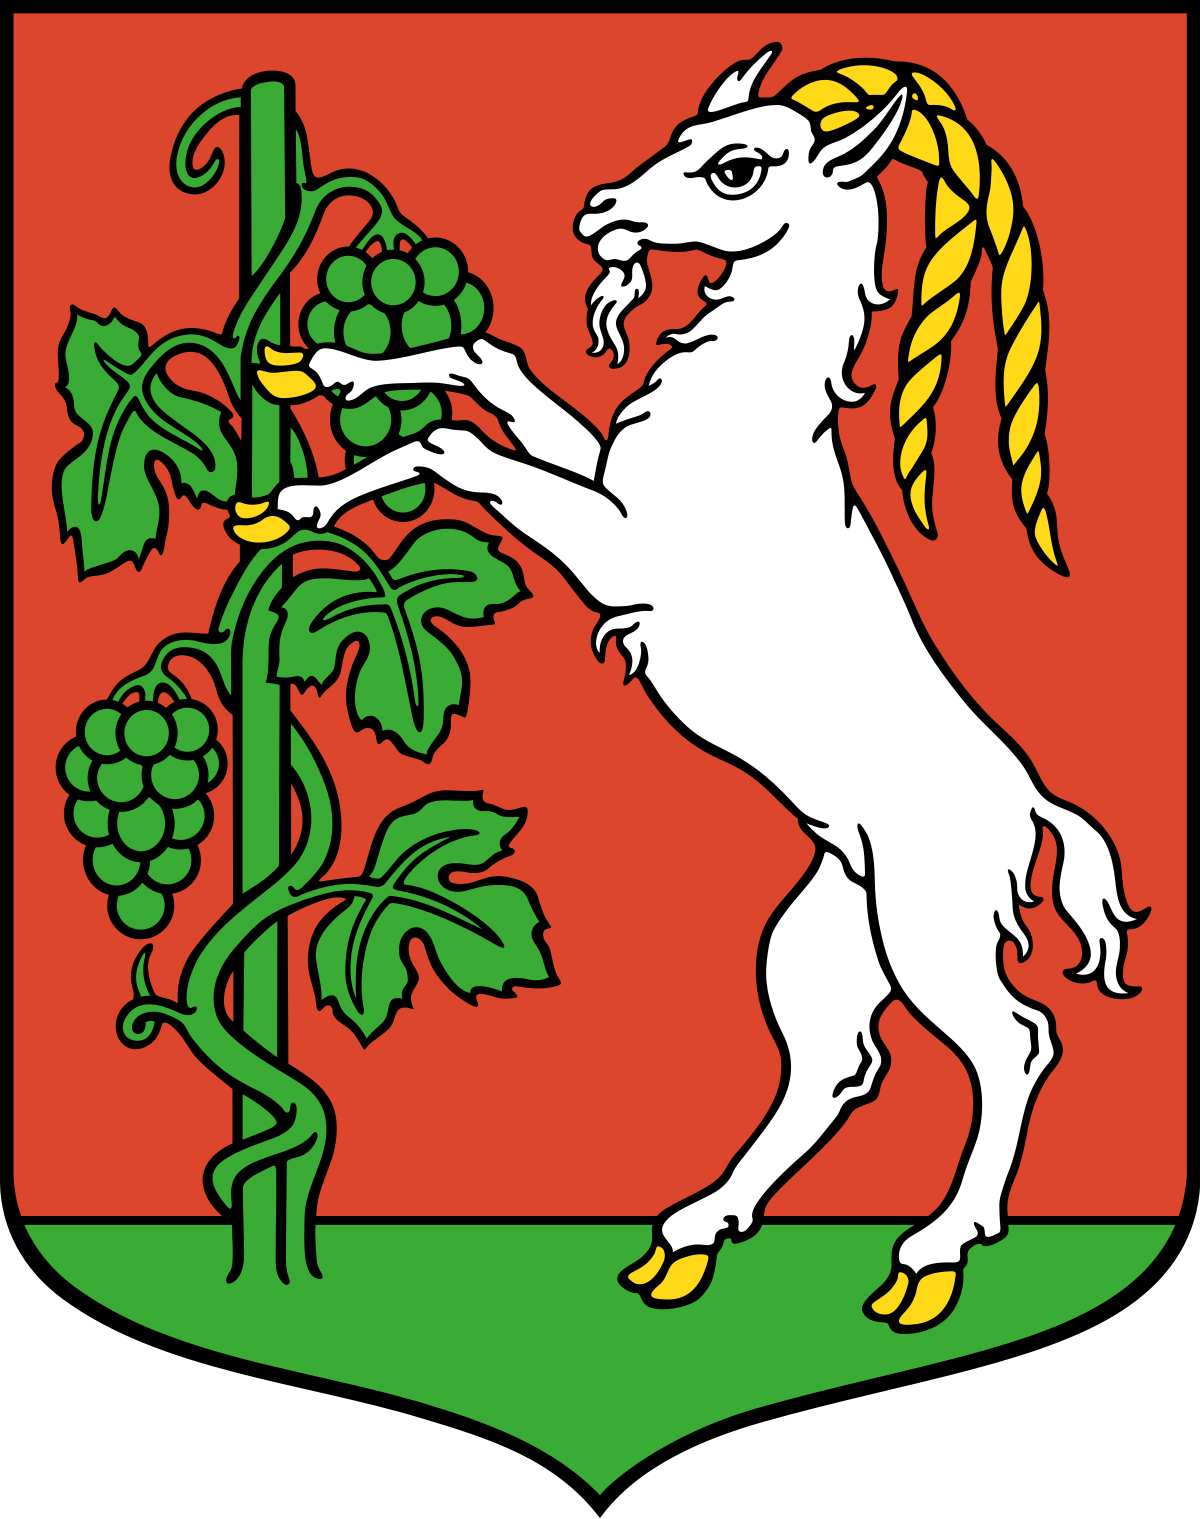 grafika przedstawiająca herb miasta Lublin